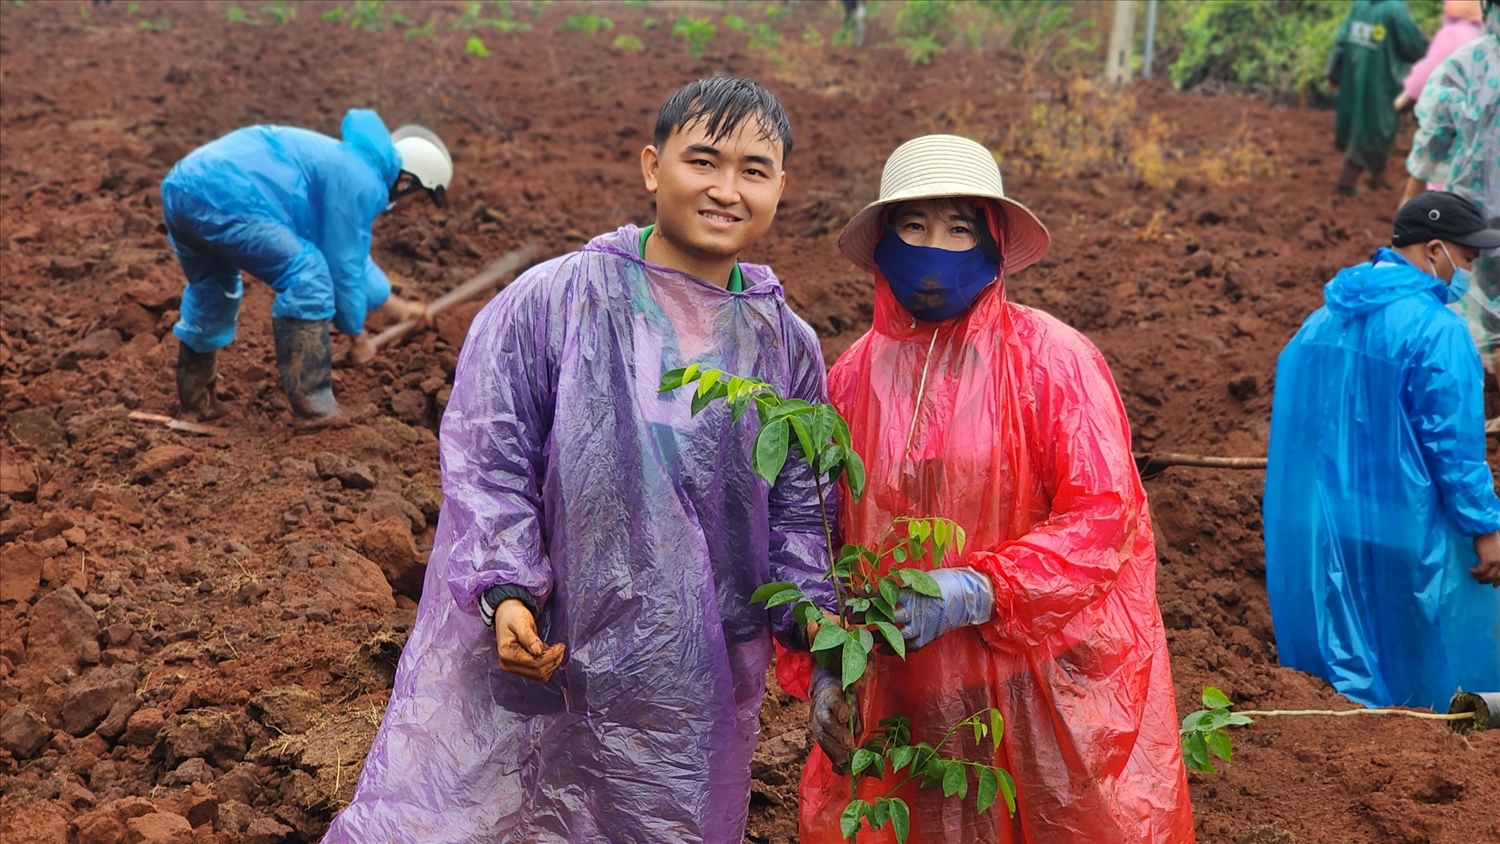 Dự án “Hành trình xanh” do anh sáng lập đã phối hợp cùng một số đơn vị trồng hơn 200.000 cây xanh như: kơ nia, giáng hương, sưa đỏ, trắc...